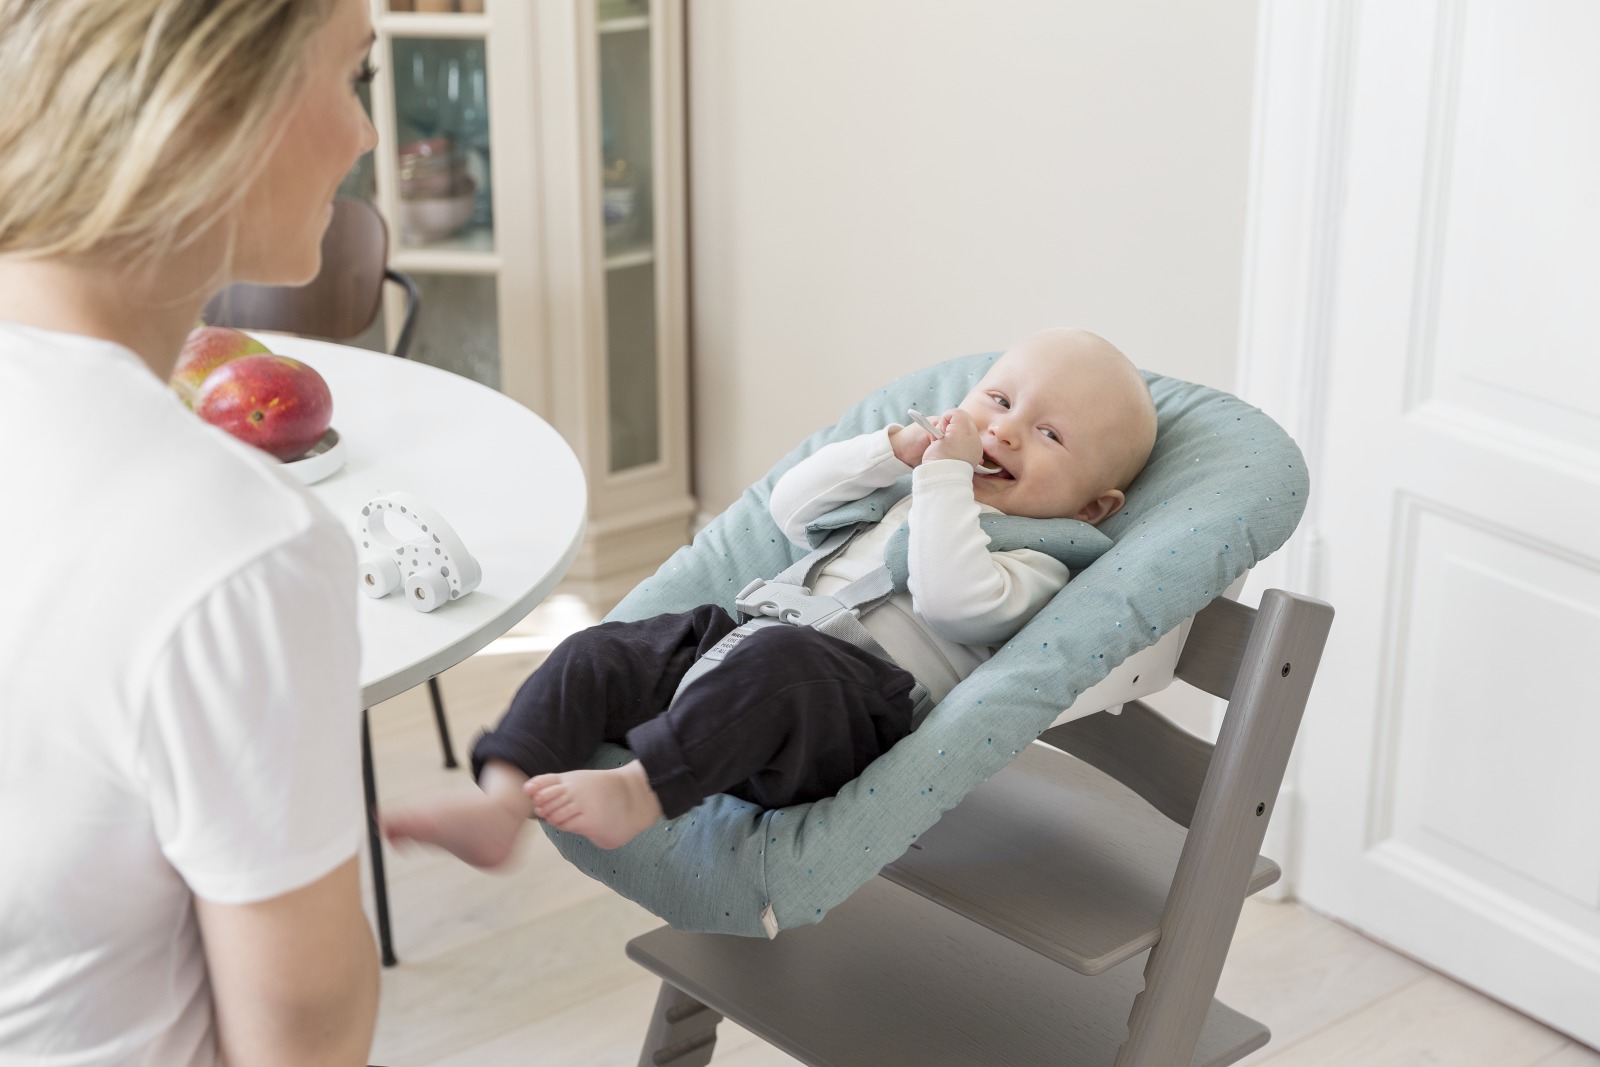 стульчики и шезлонги для новорожденных